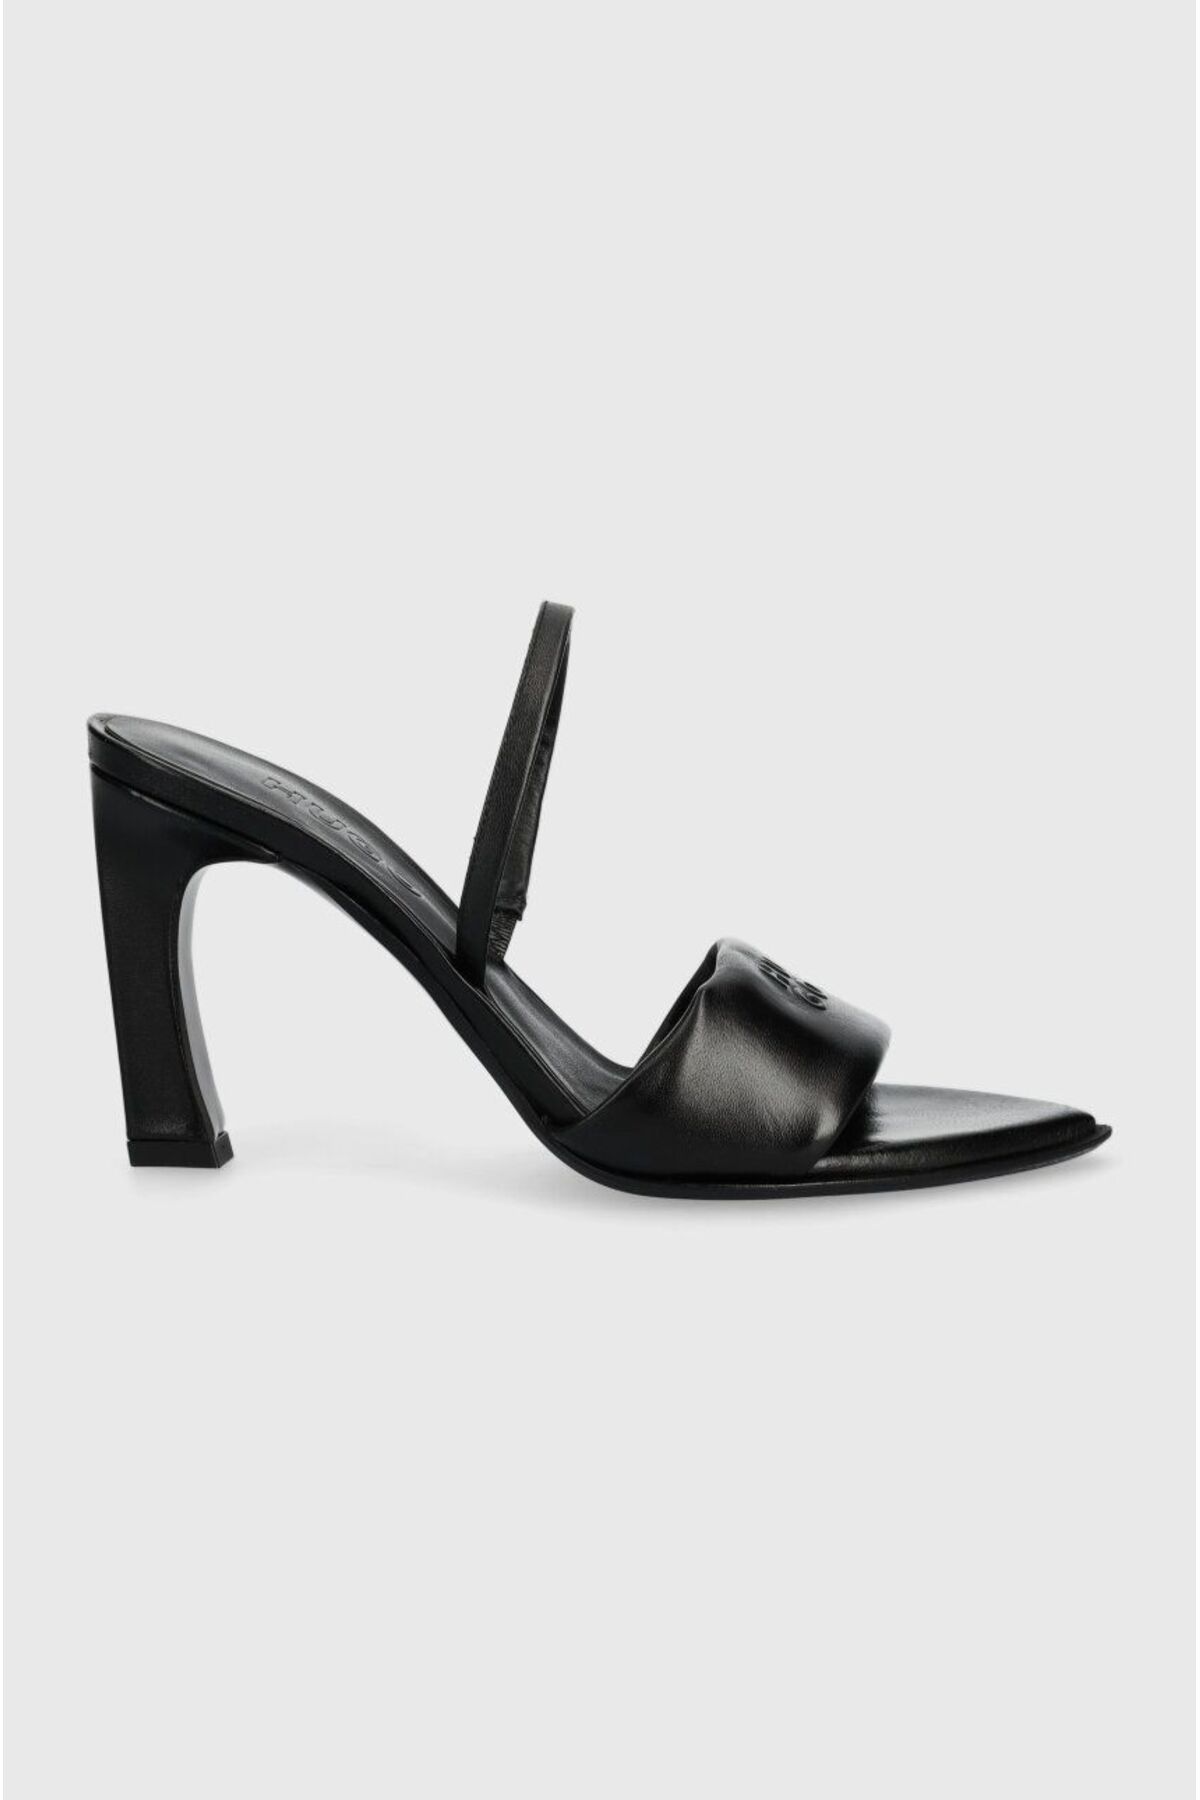 BOSS Kadın Yüksek Topuklu Rahat Logolu Siyah Klasik Topuklu Ayakkabı 50517448-001